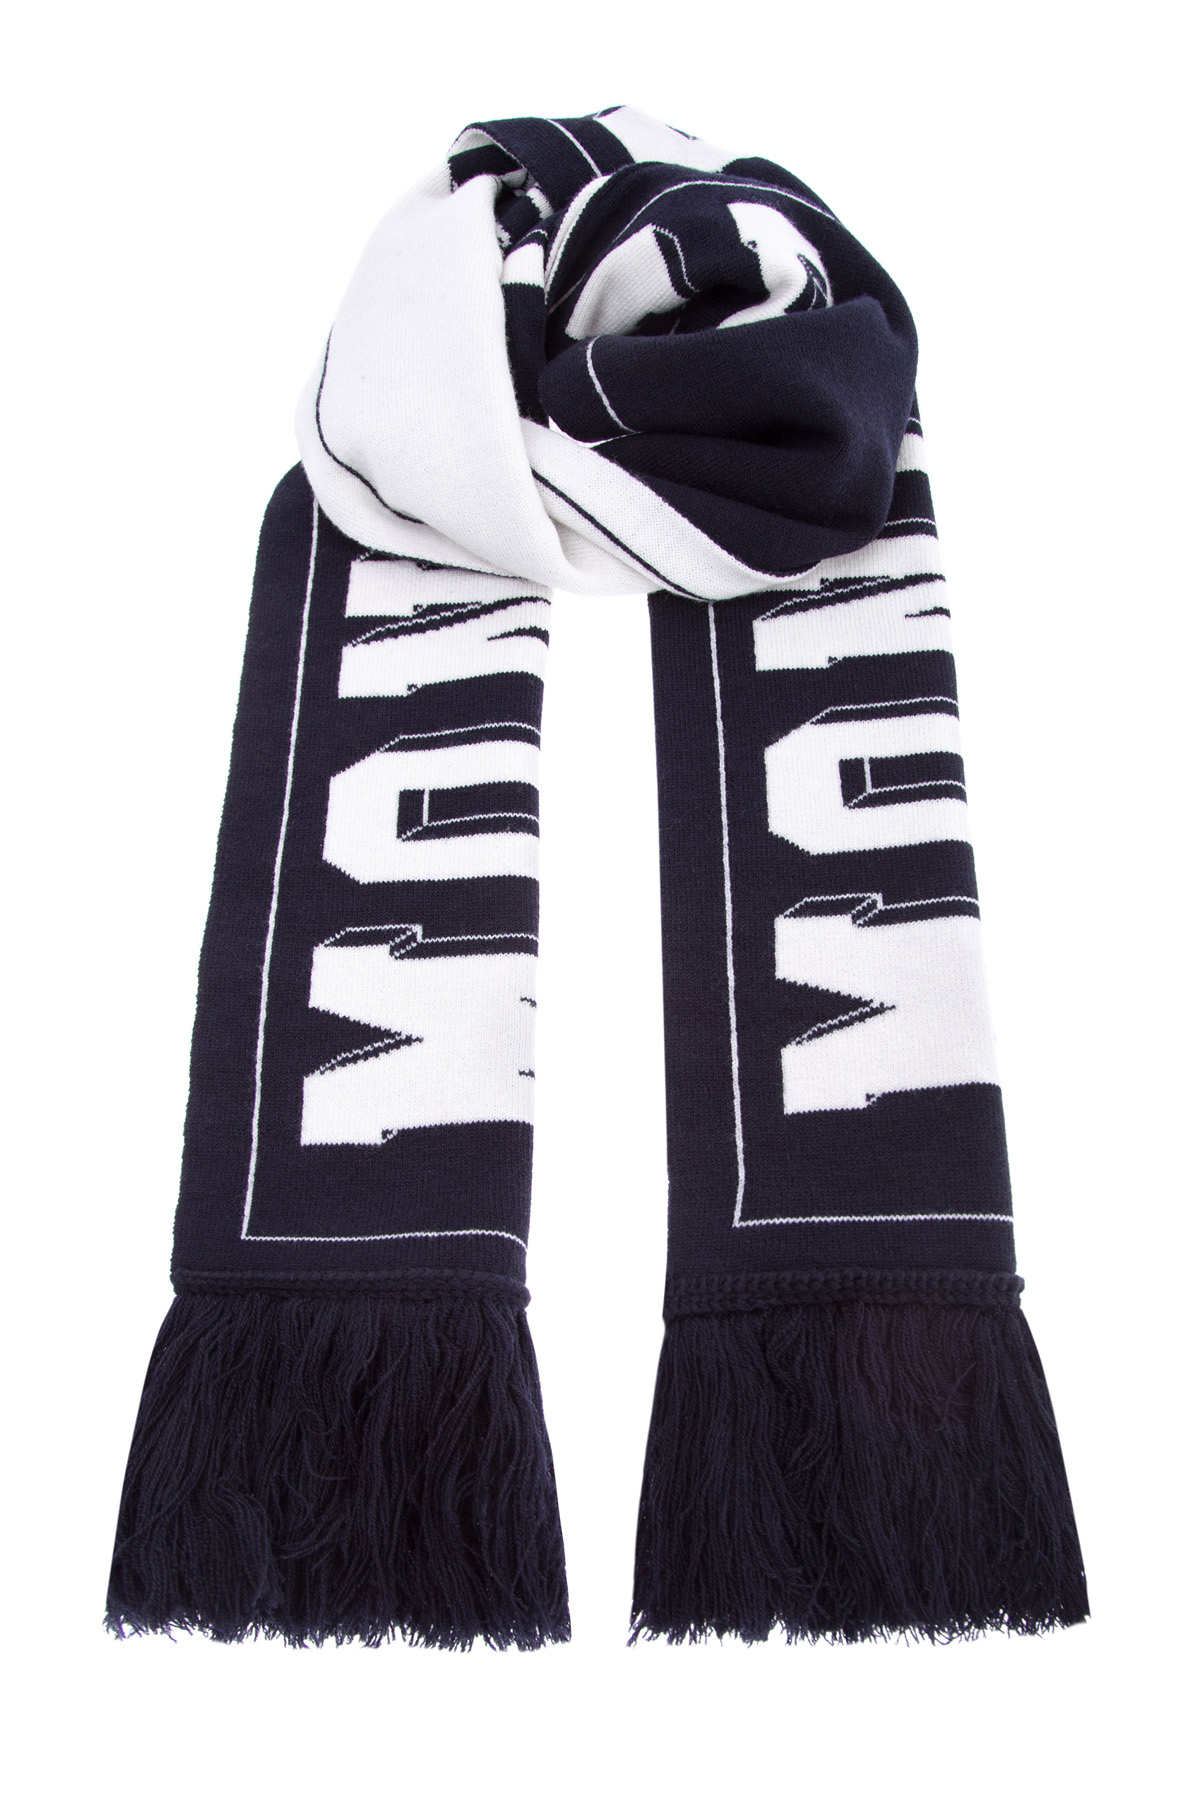 Шерстяной шарф с контрастной монограммой MONCLER, цвет черно-белый, размер 48